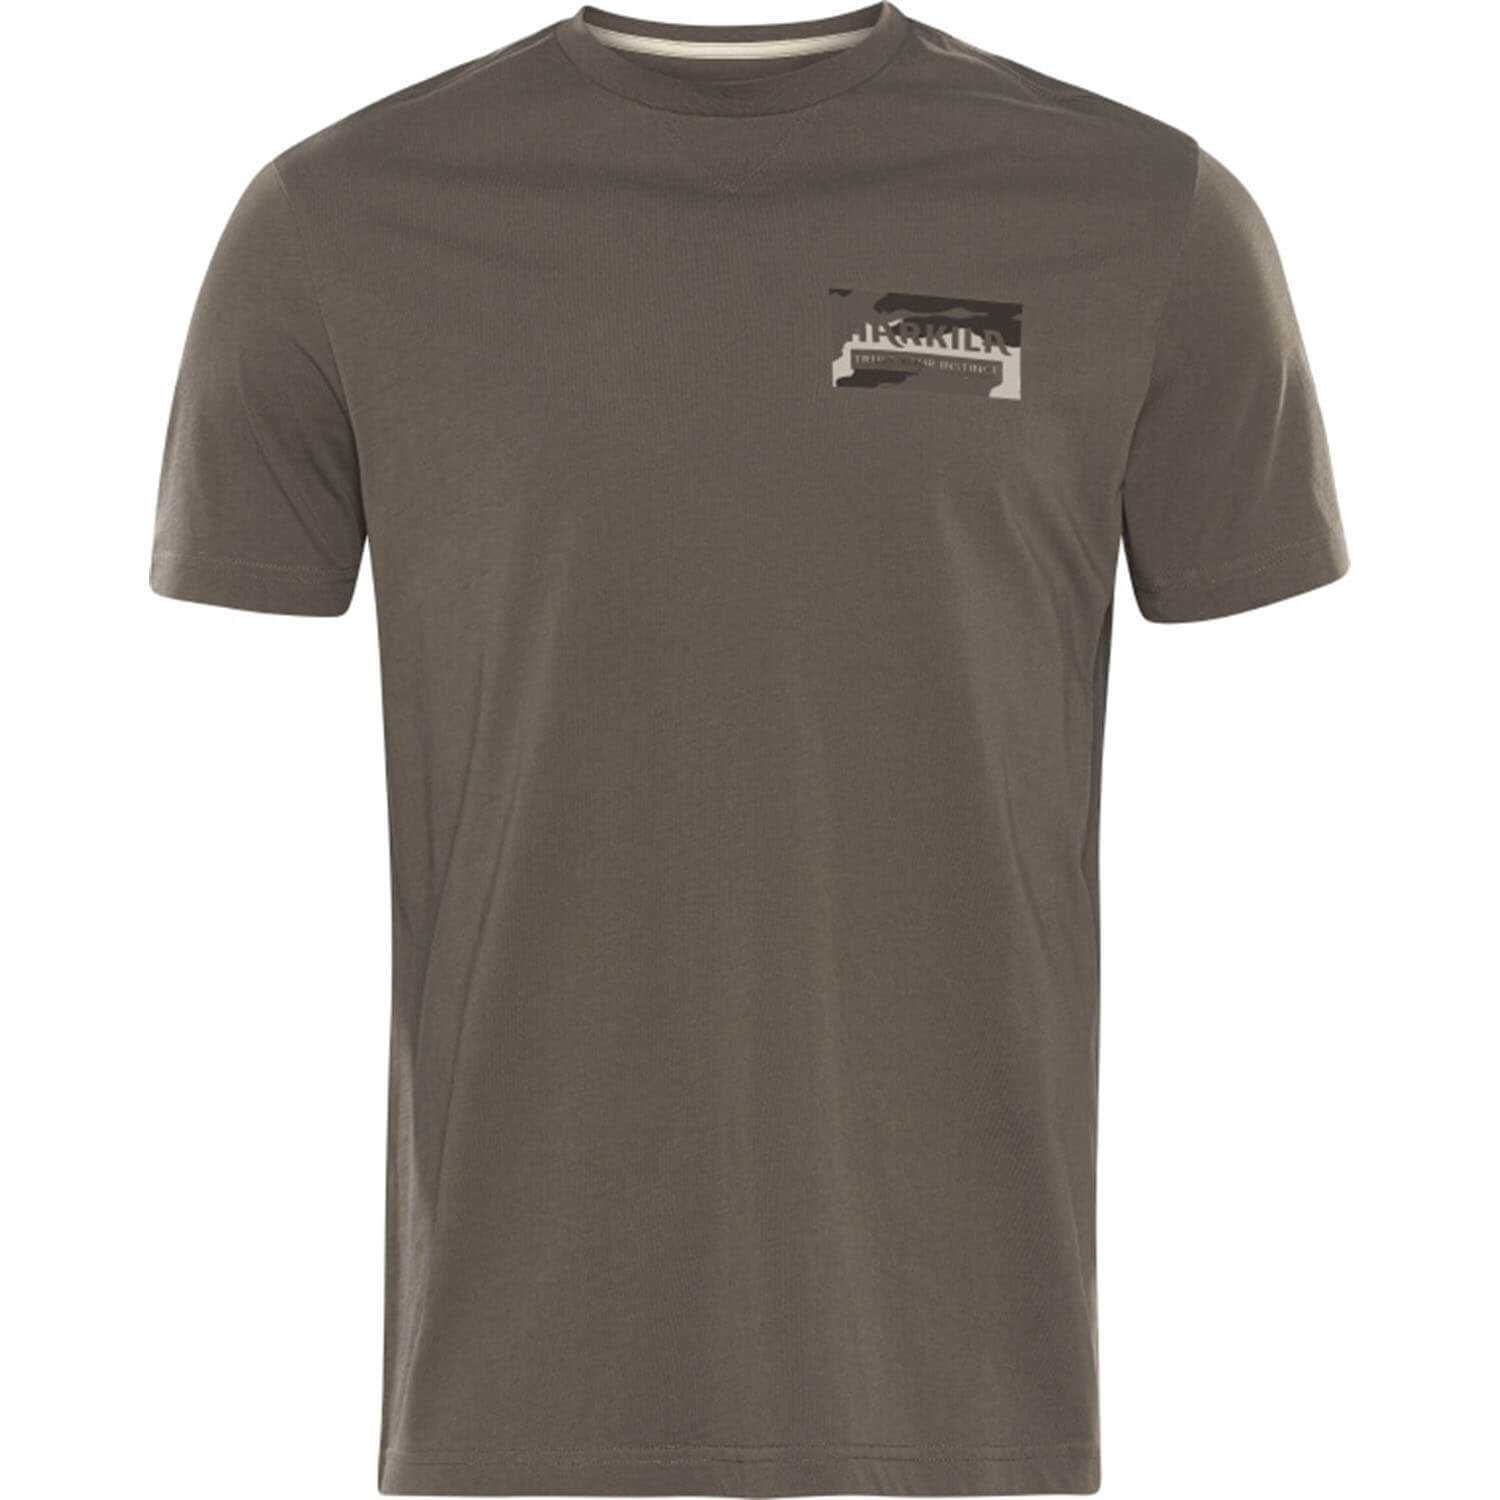  Härkila Kern T-shirt (bruin) - Overhemden & shirts